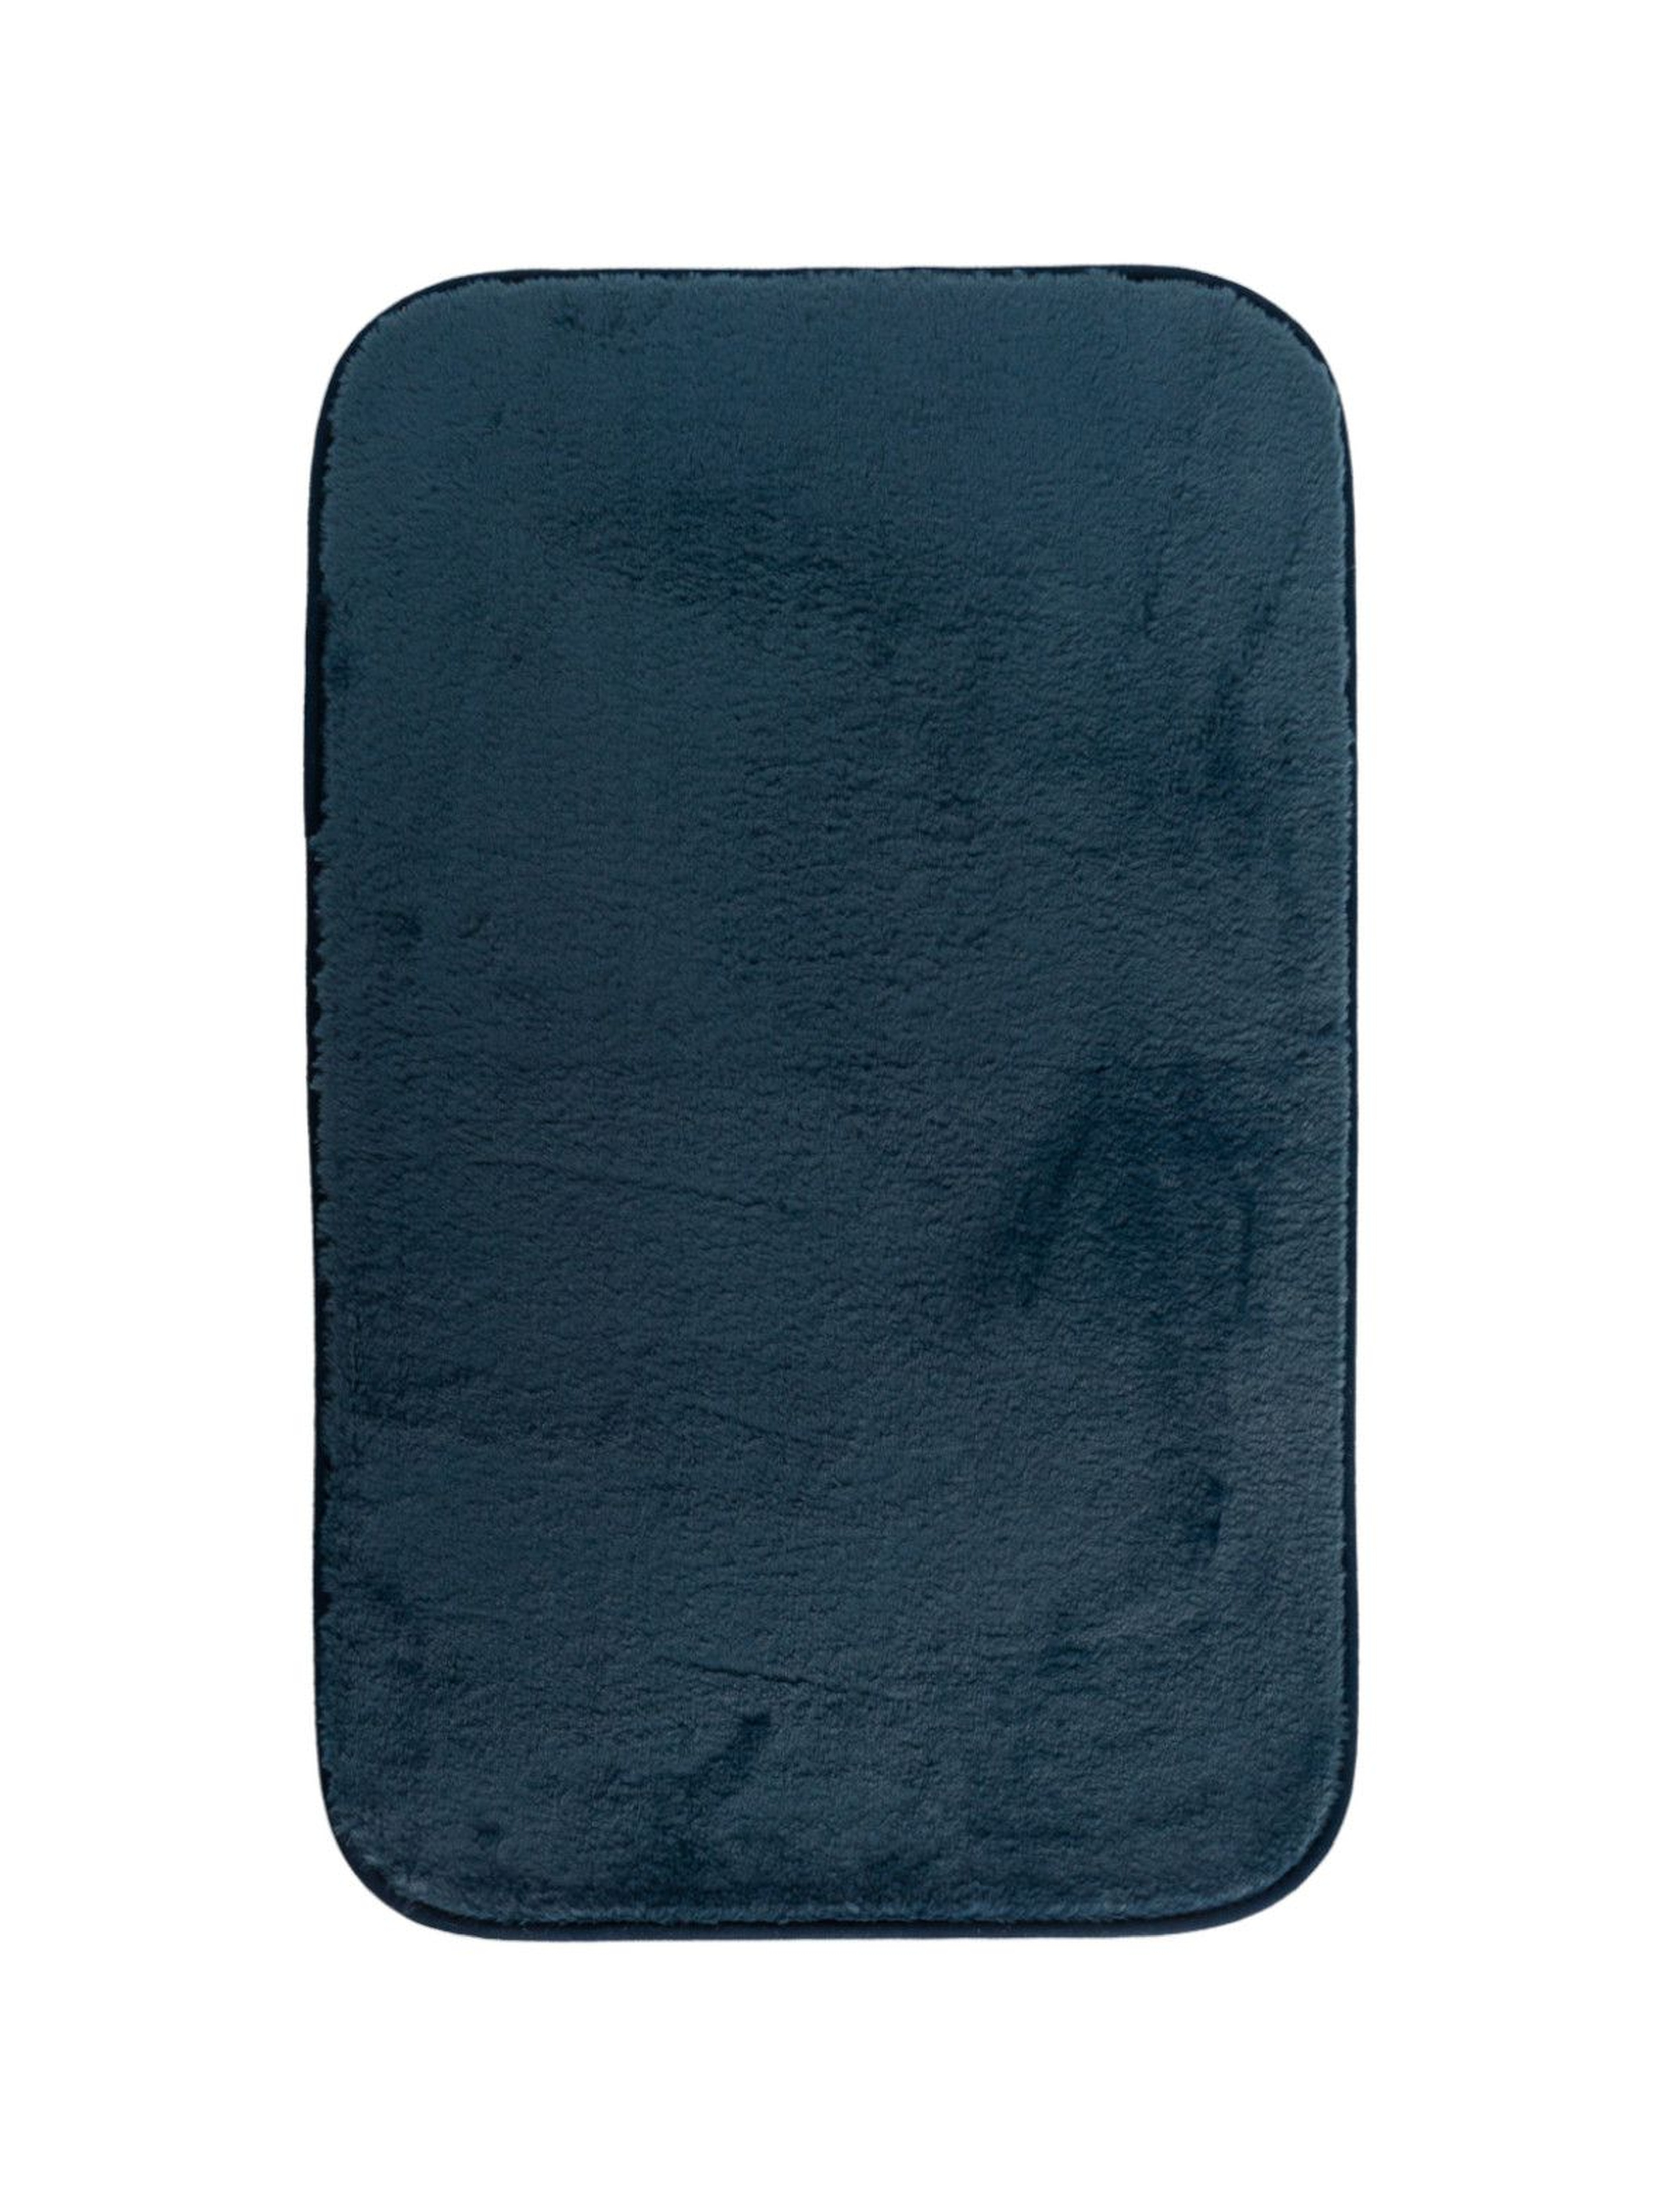 Granatowy dywanik  łazienkowy Parmon 50x80 cm